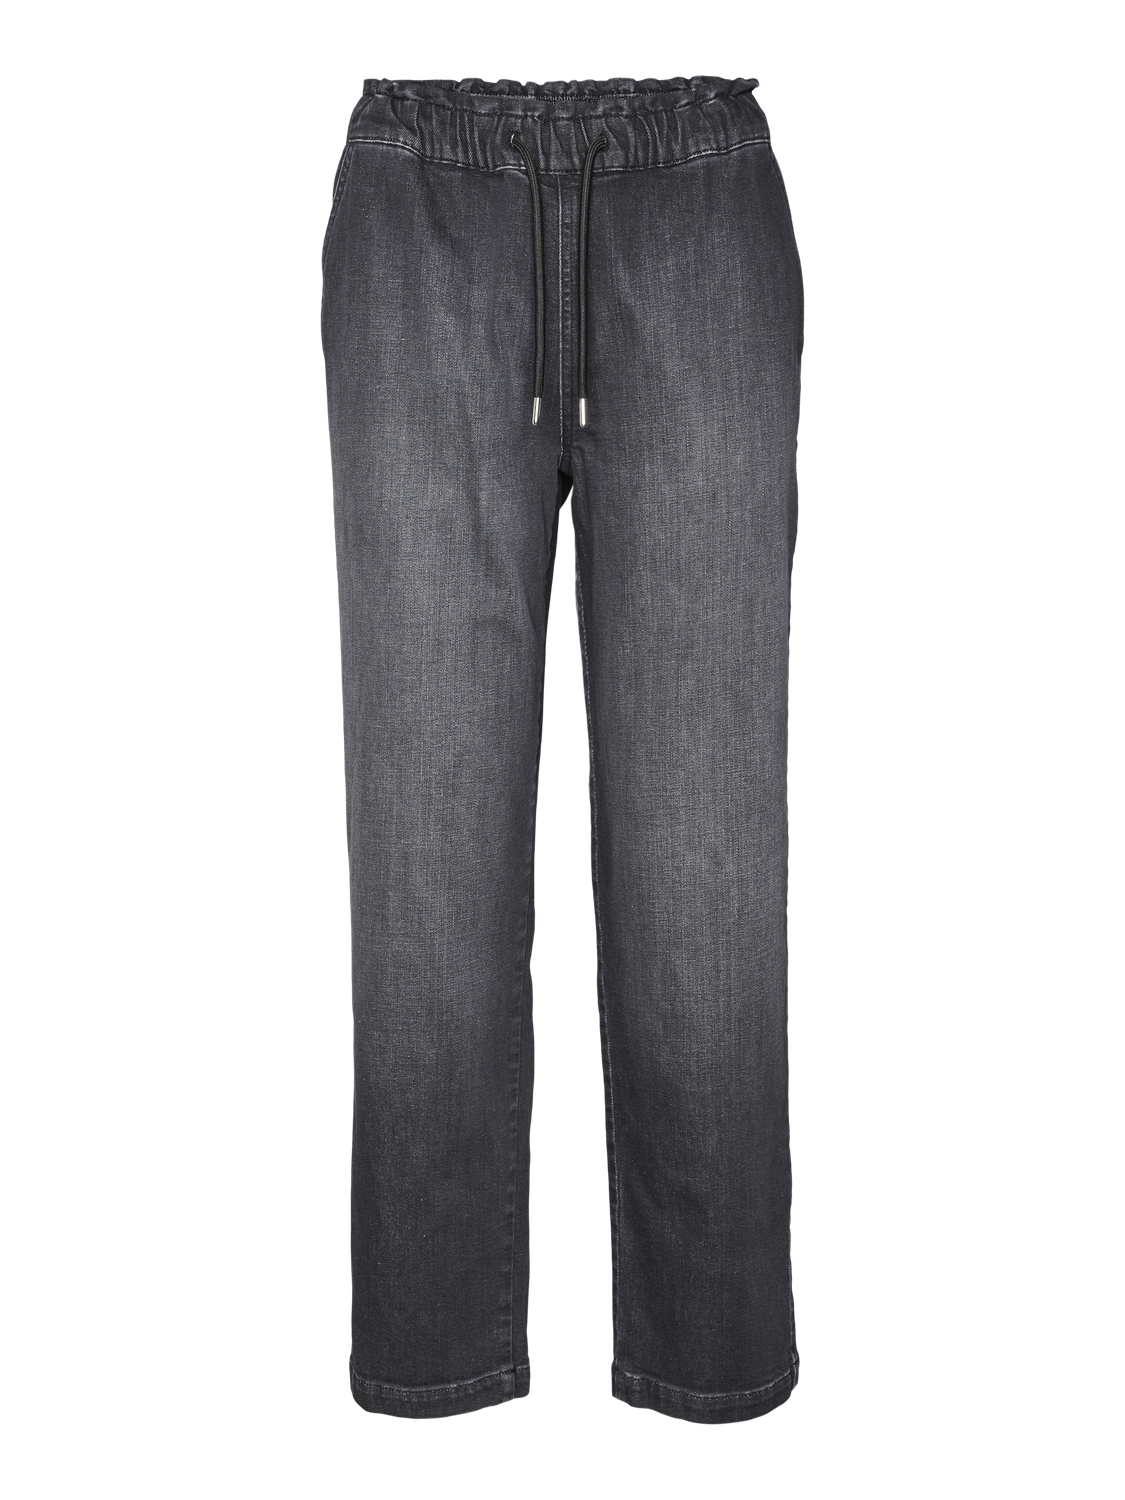 Vero Moda VMCALLIE Vita media Loose Carrot Fit Jeans -Black Denim - 10321560